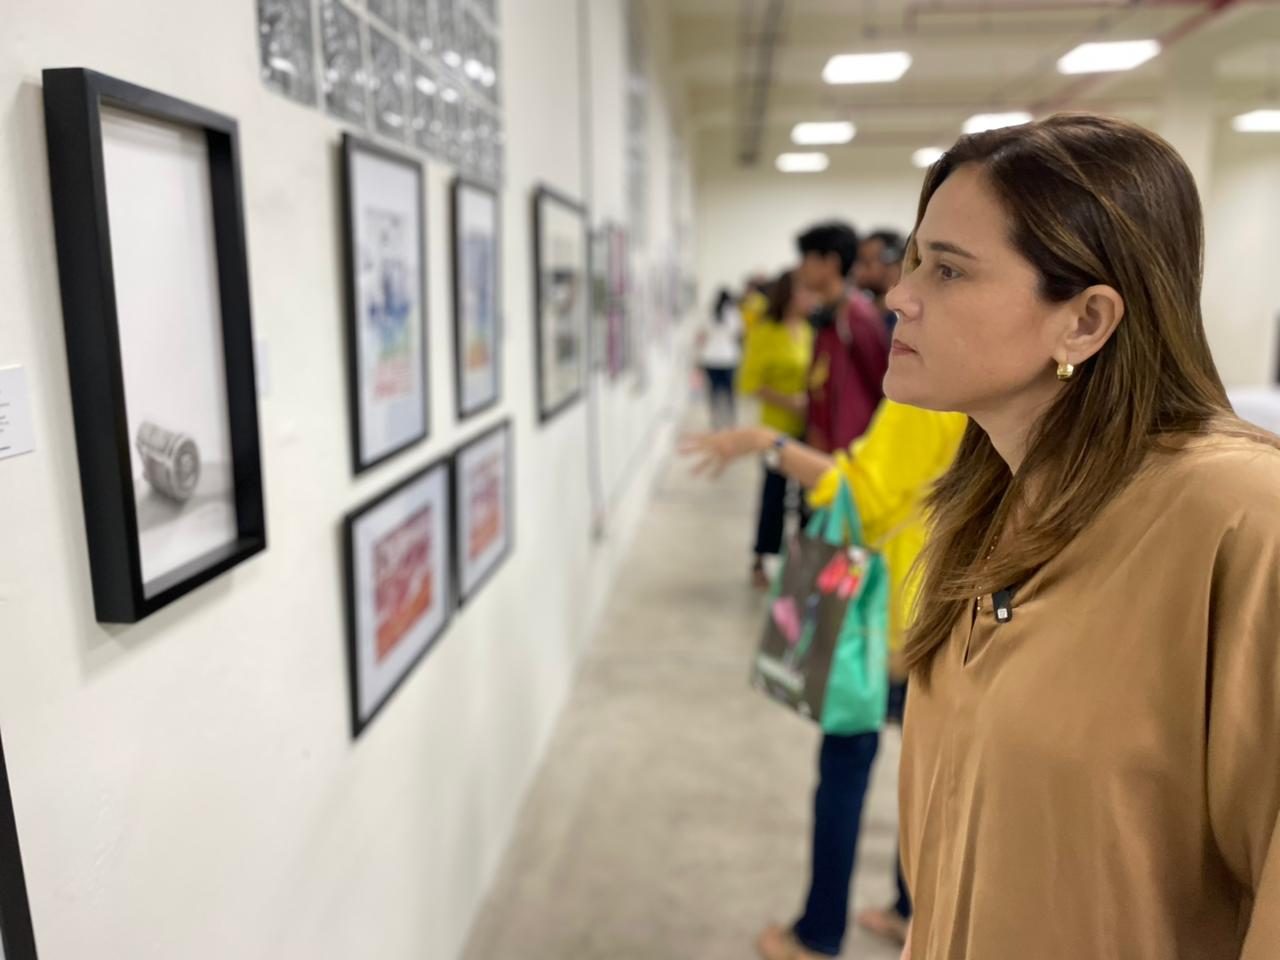 Secretaría de cultura inaugura salón  de artistas plásticos y visuales de Barranquilla